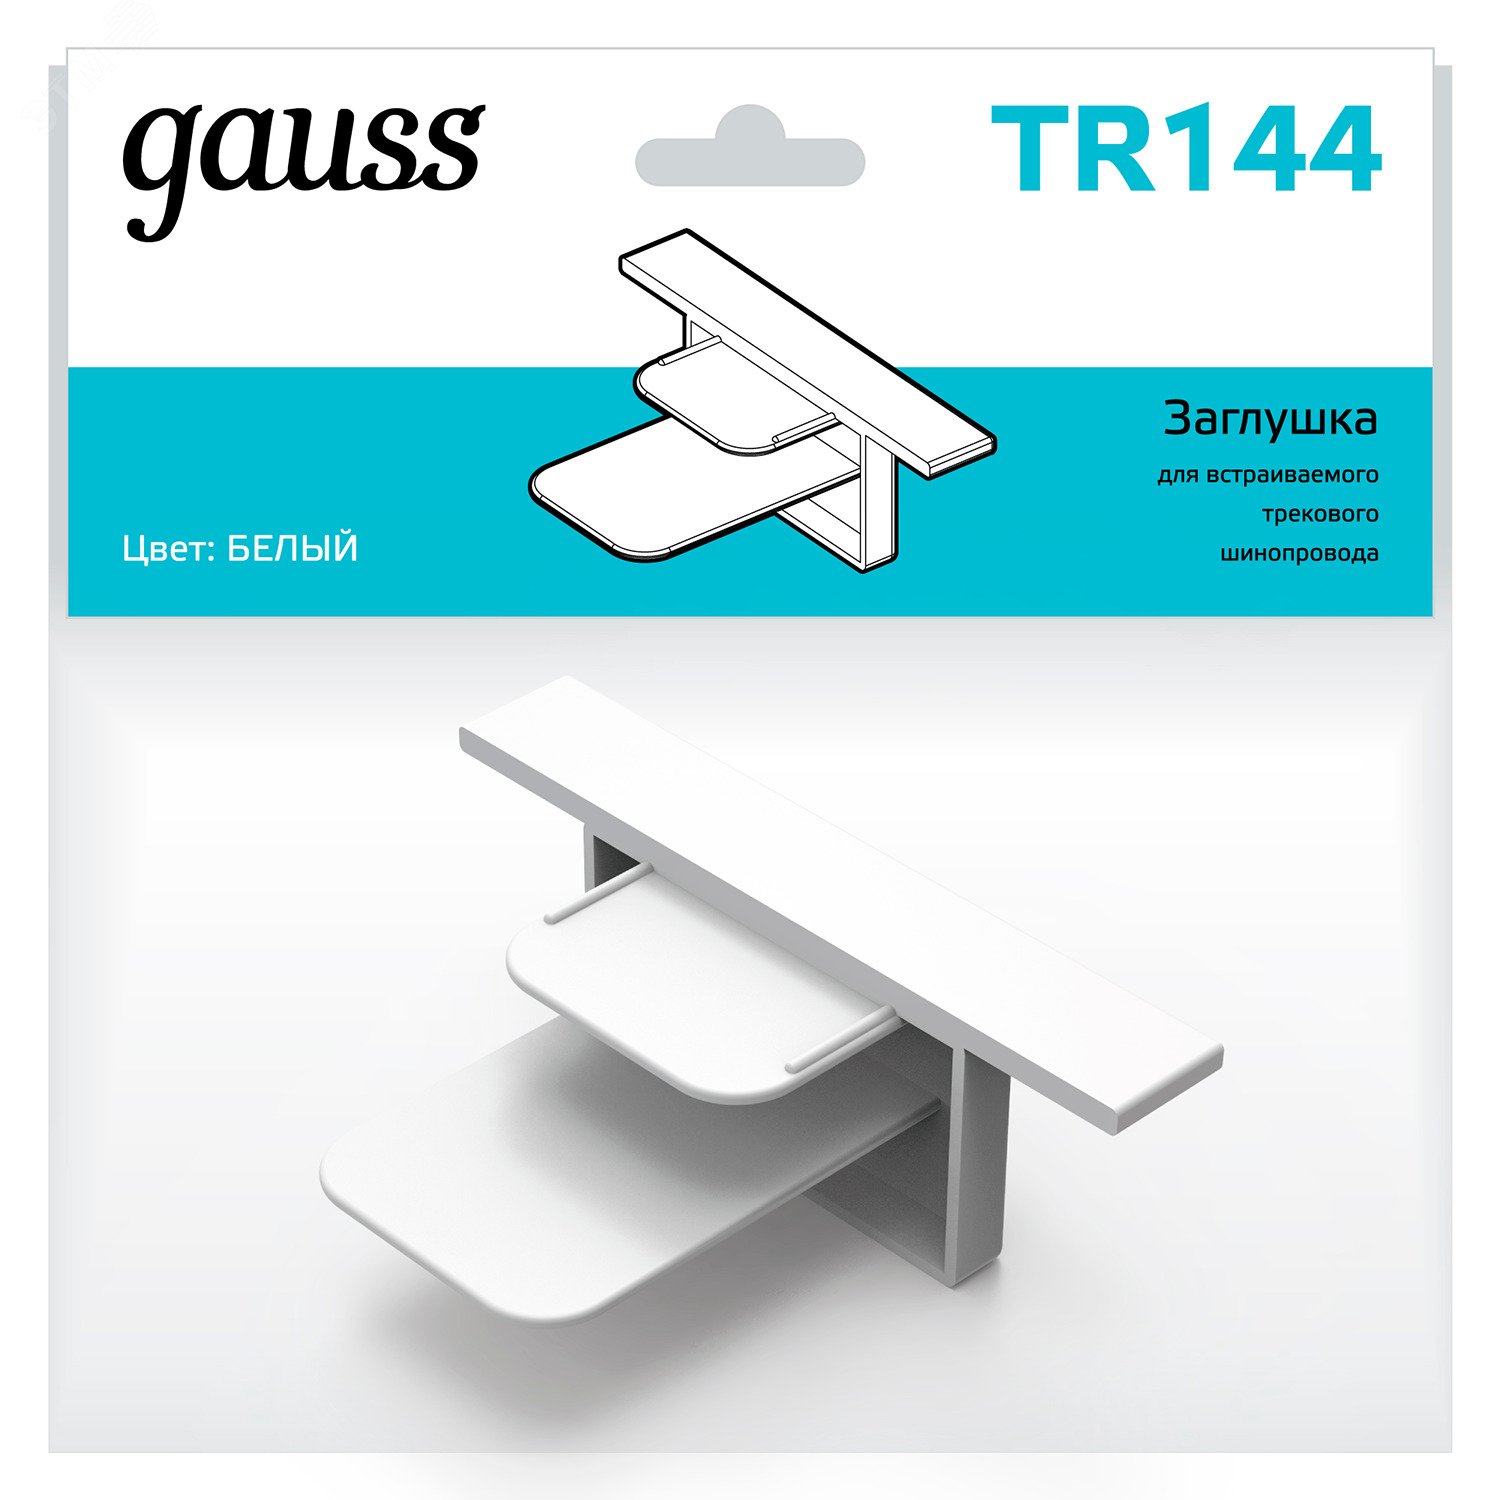 Заглушка для встраиваемого трекового шинопровода белый однофазный Gauss TR144 GAUSS - превью 3